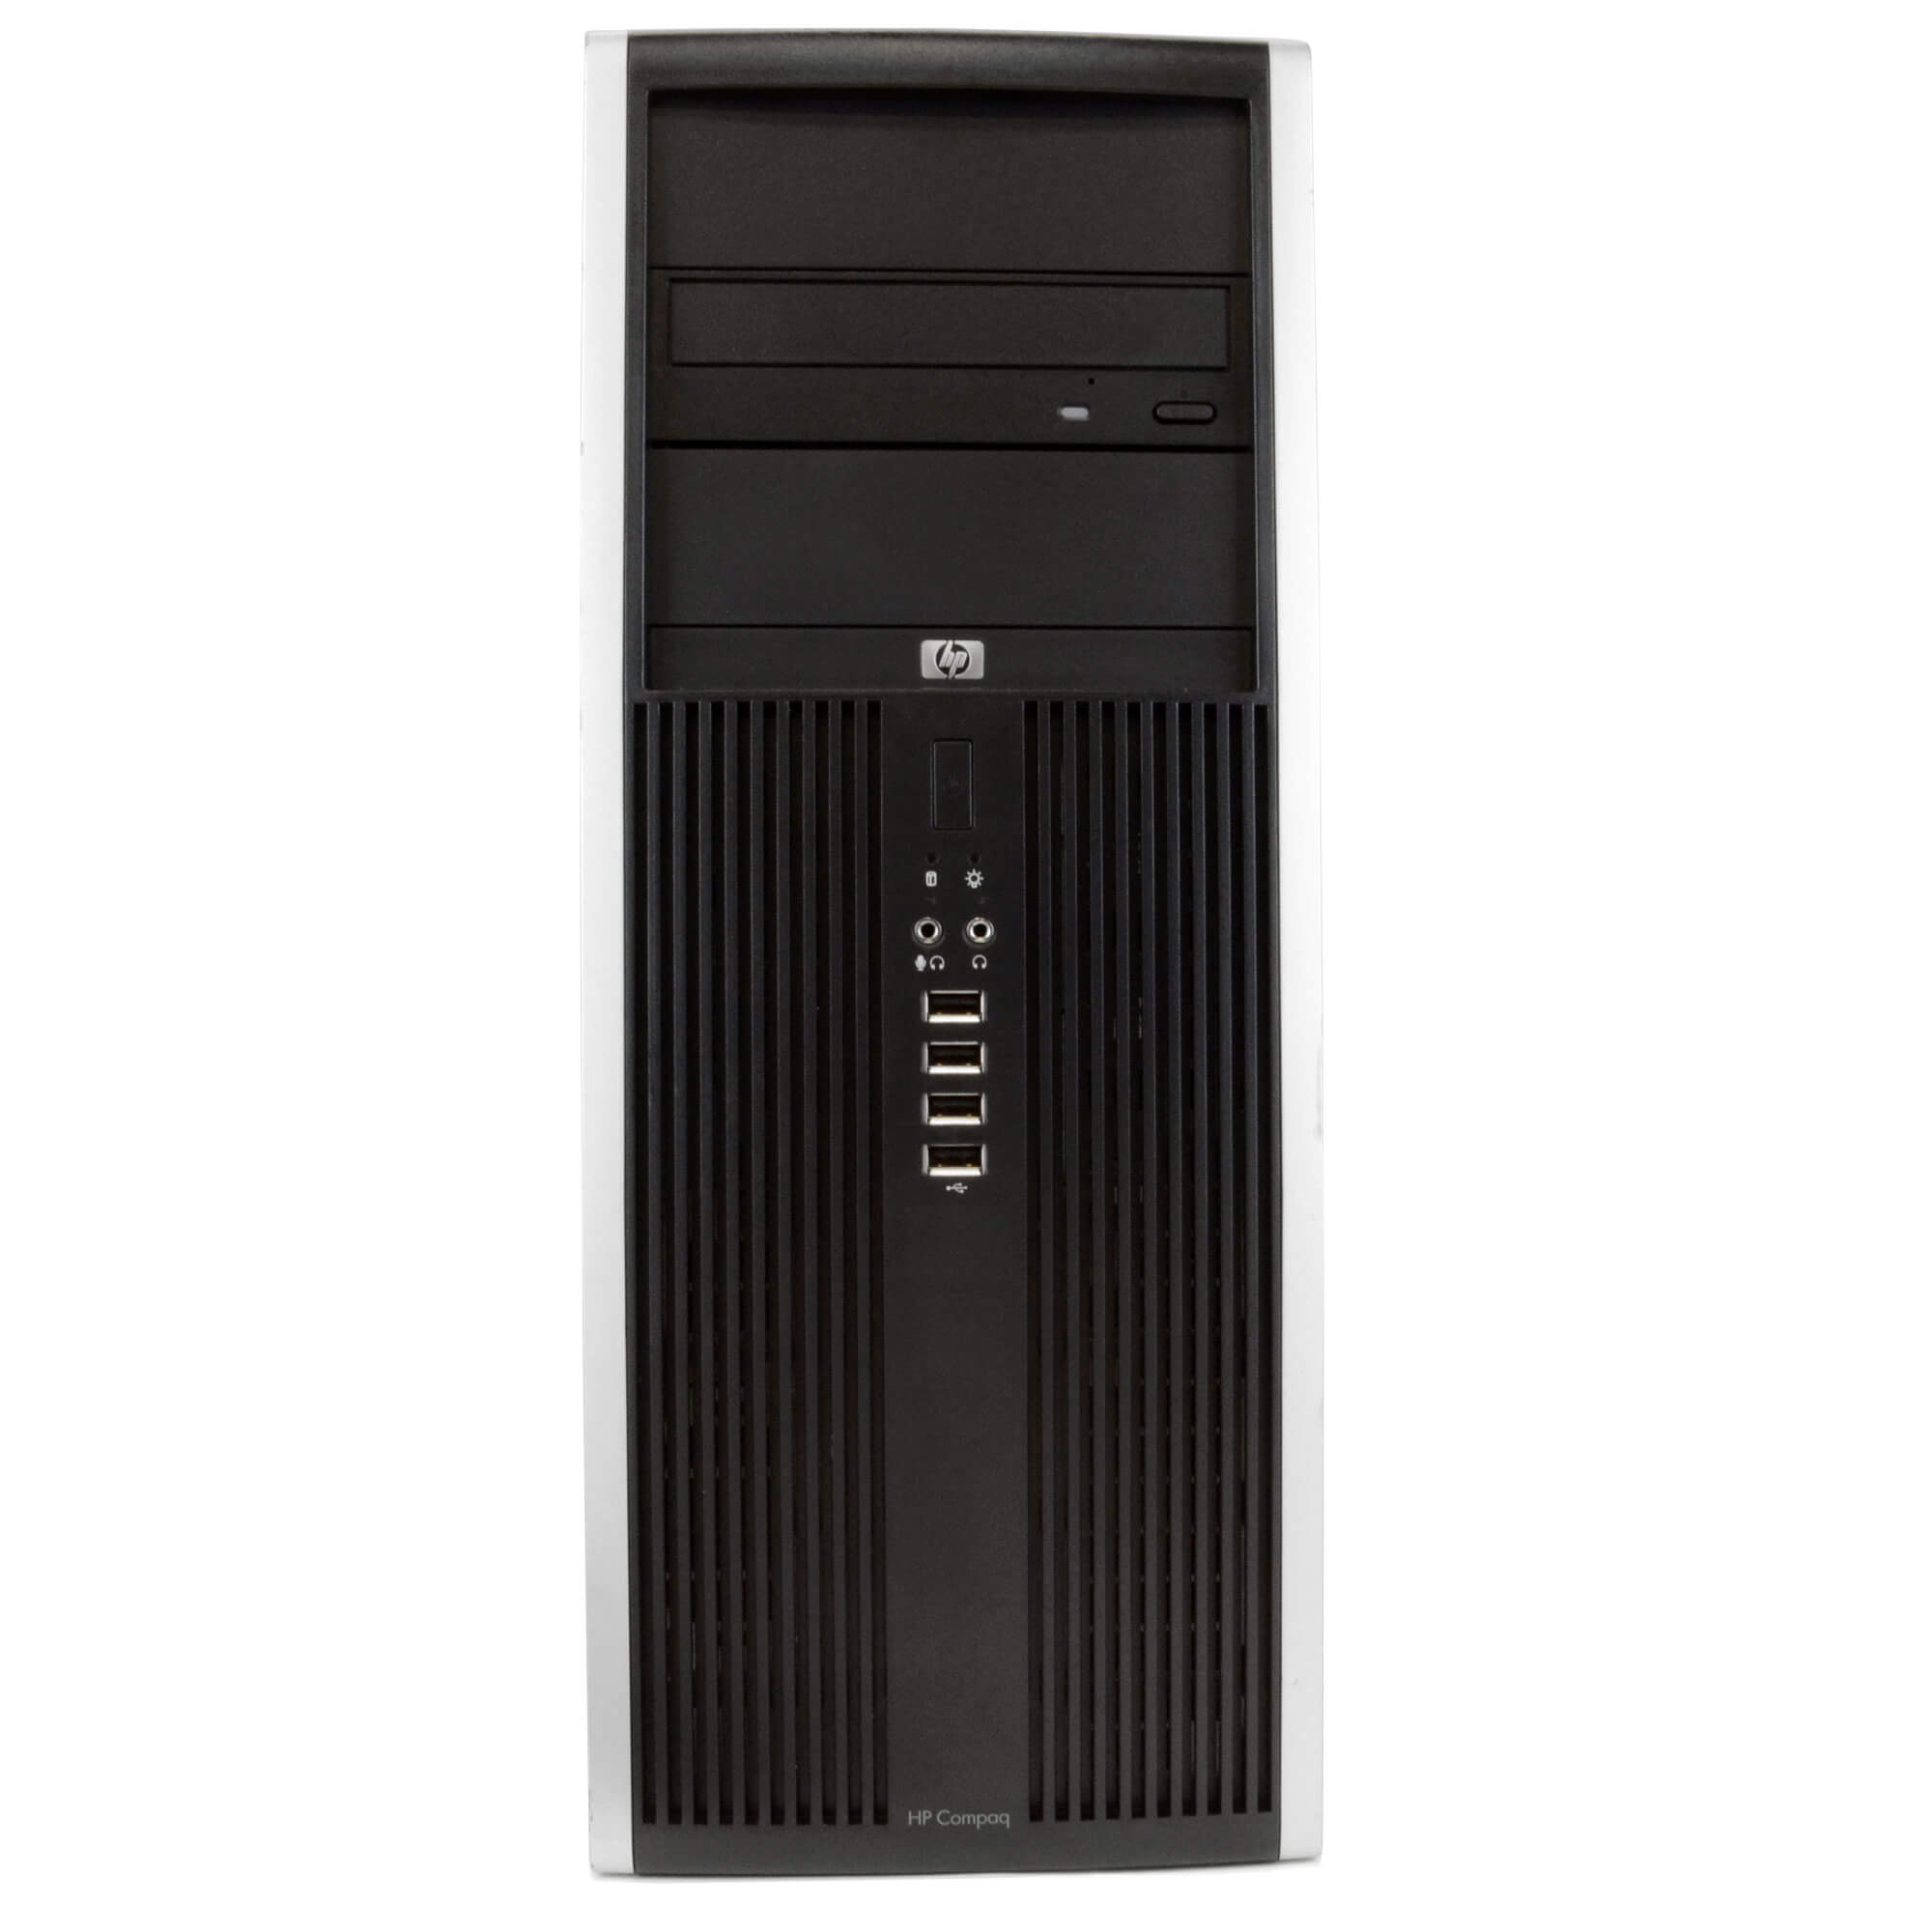 HP Compaq Elite 8100 Tower PC, 3.2GHz Intel i5 Dual Core Gen 1, 16GB RAM, 1TB SATA HD, Windows 10 Professional 64 bit, Dual (2) 22” Screens Screen (Renewed)